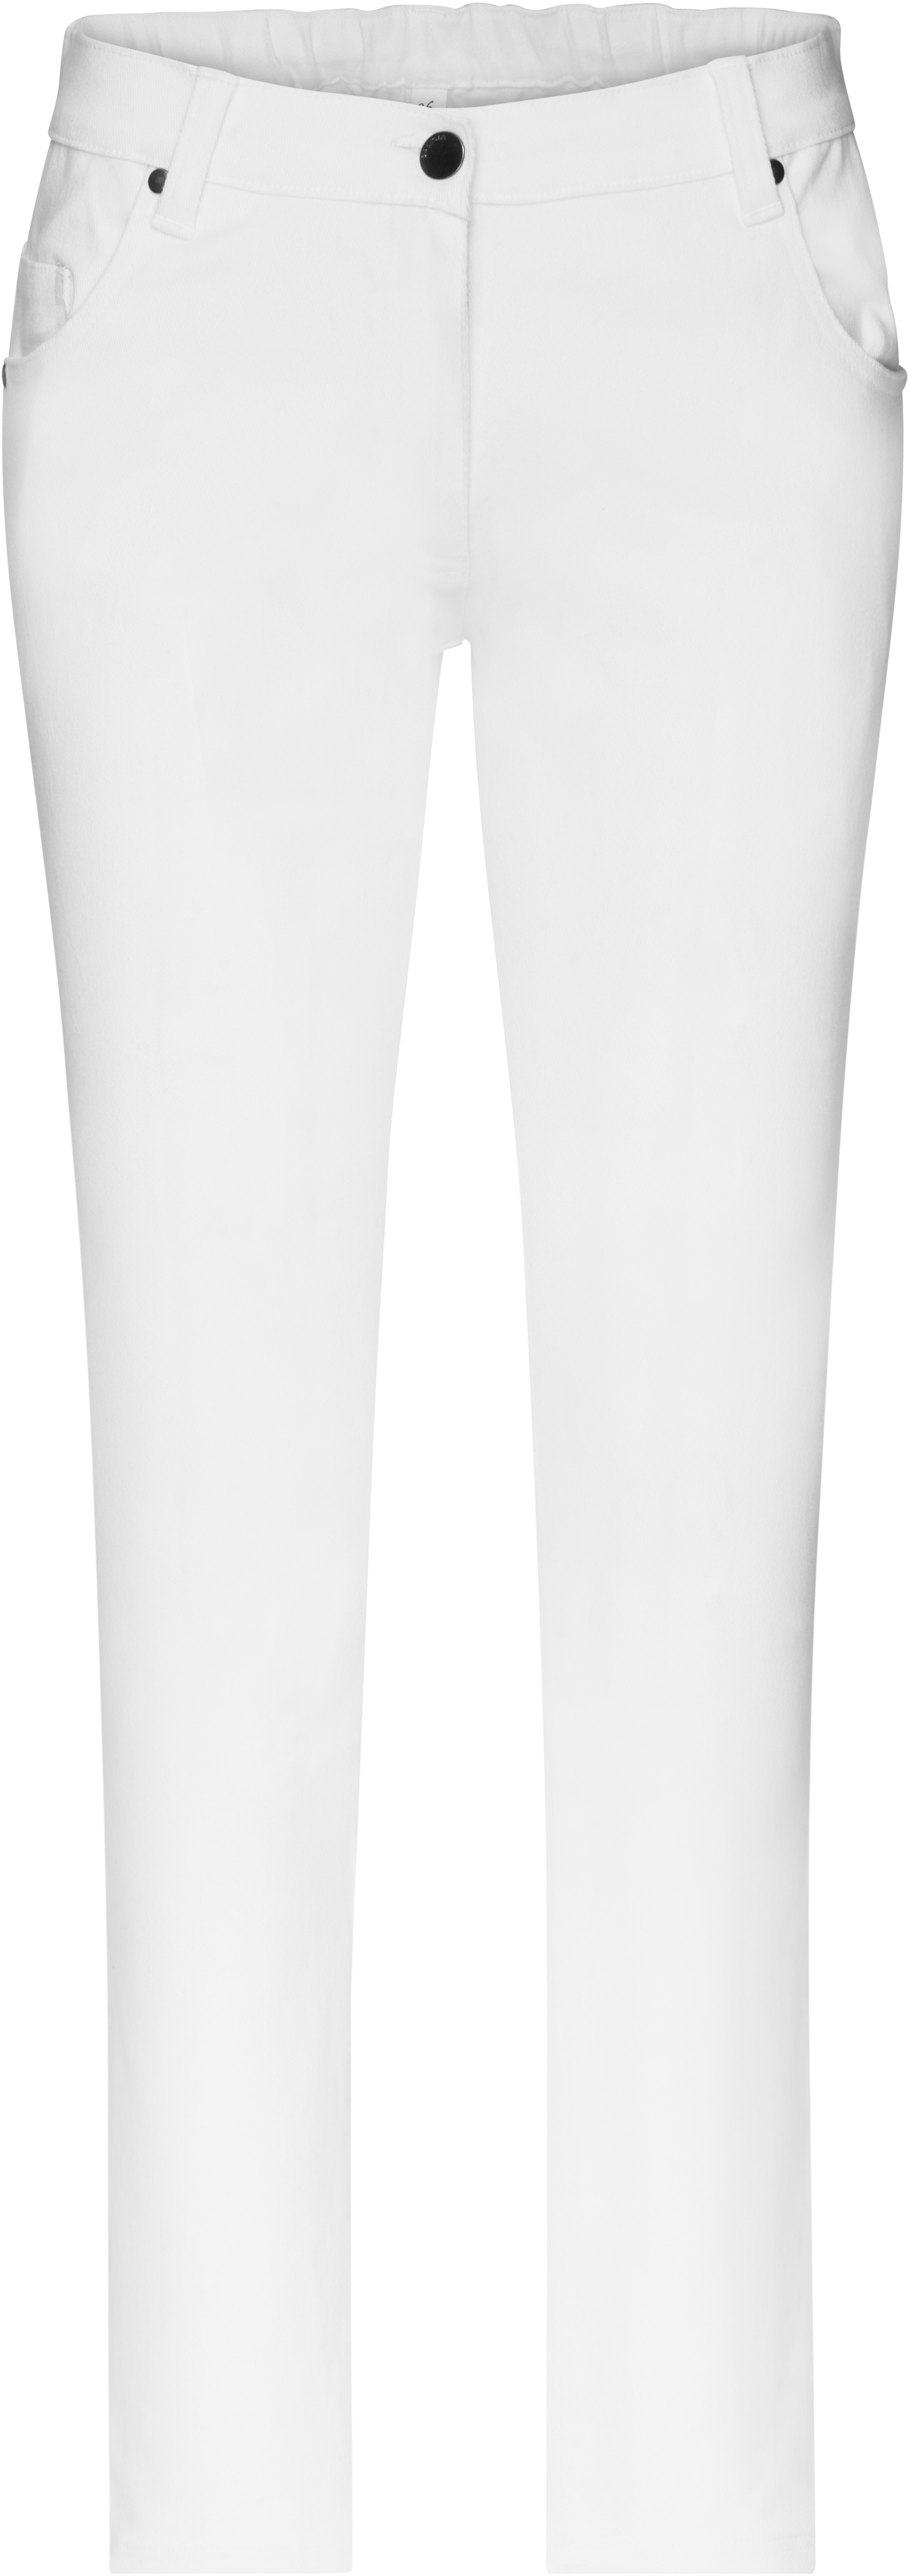 Dámské elastické kalhoty JN 3001 Barva: bílá, Velikost: 52